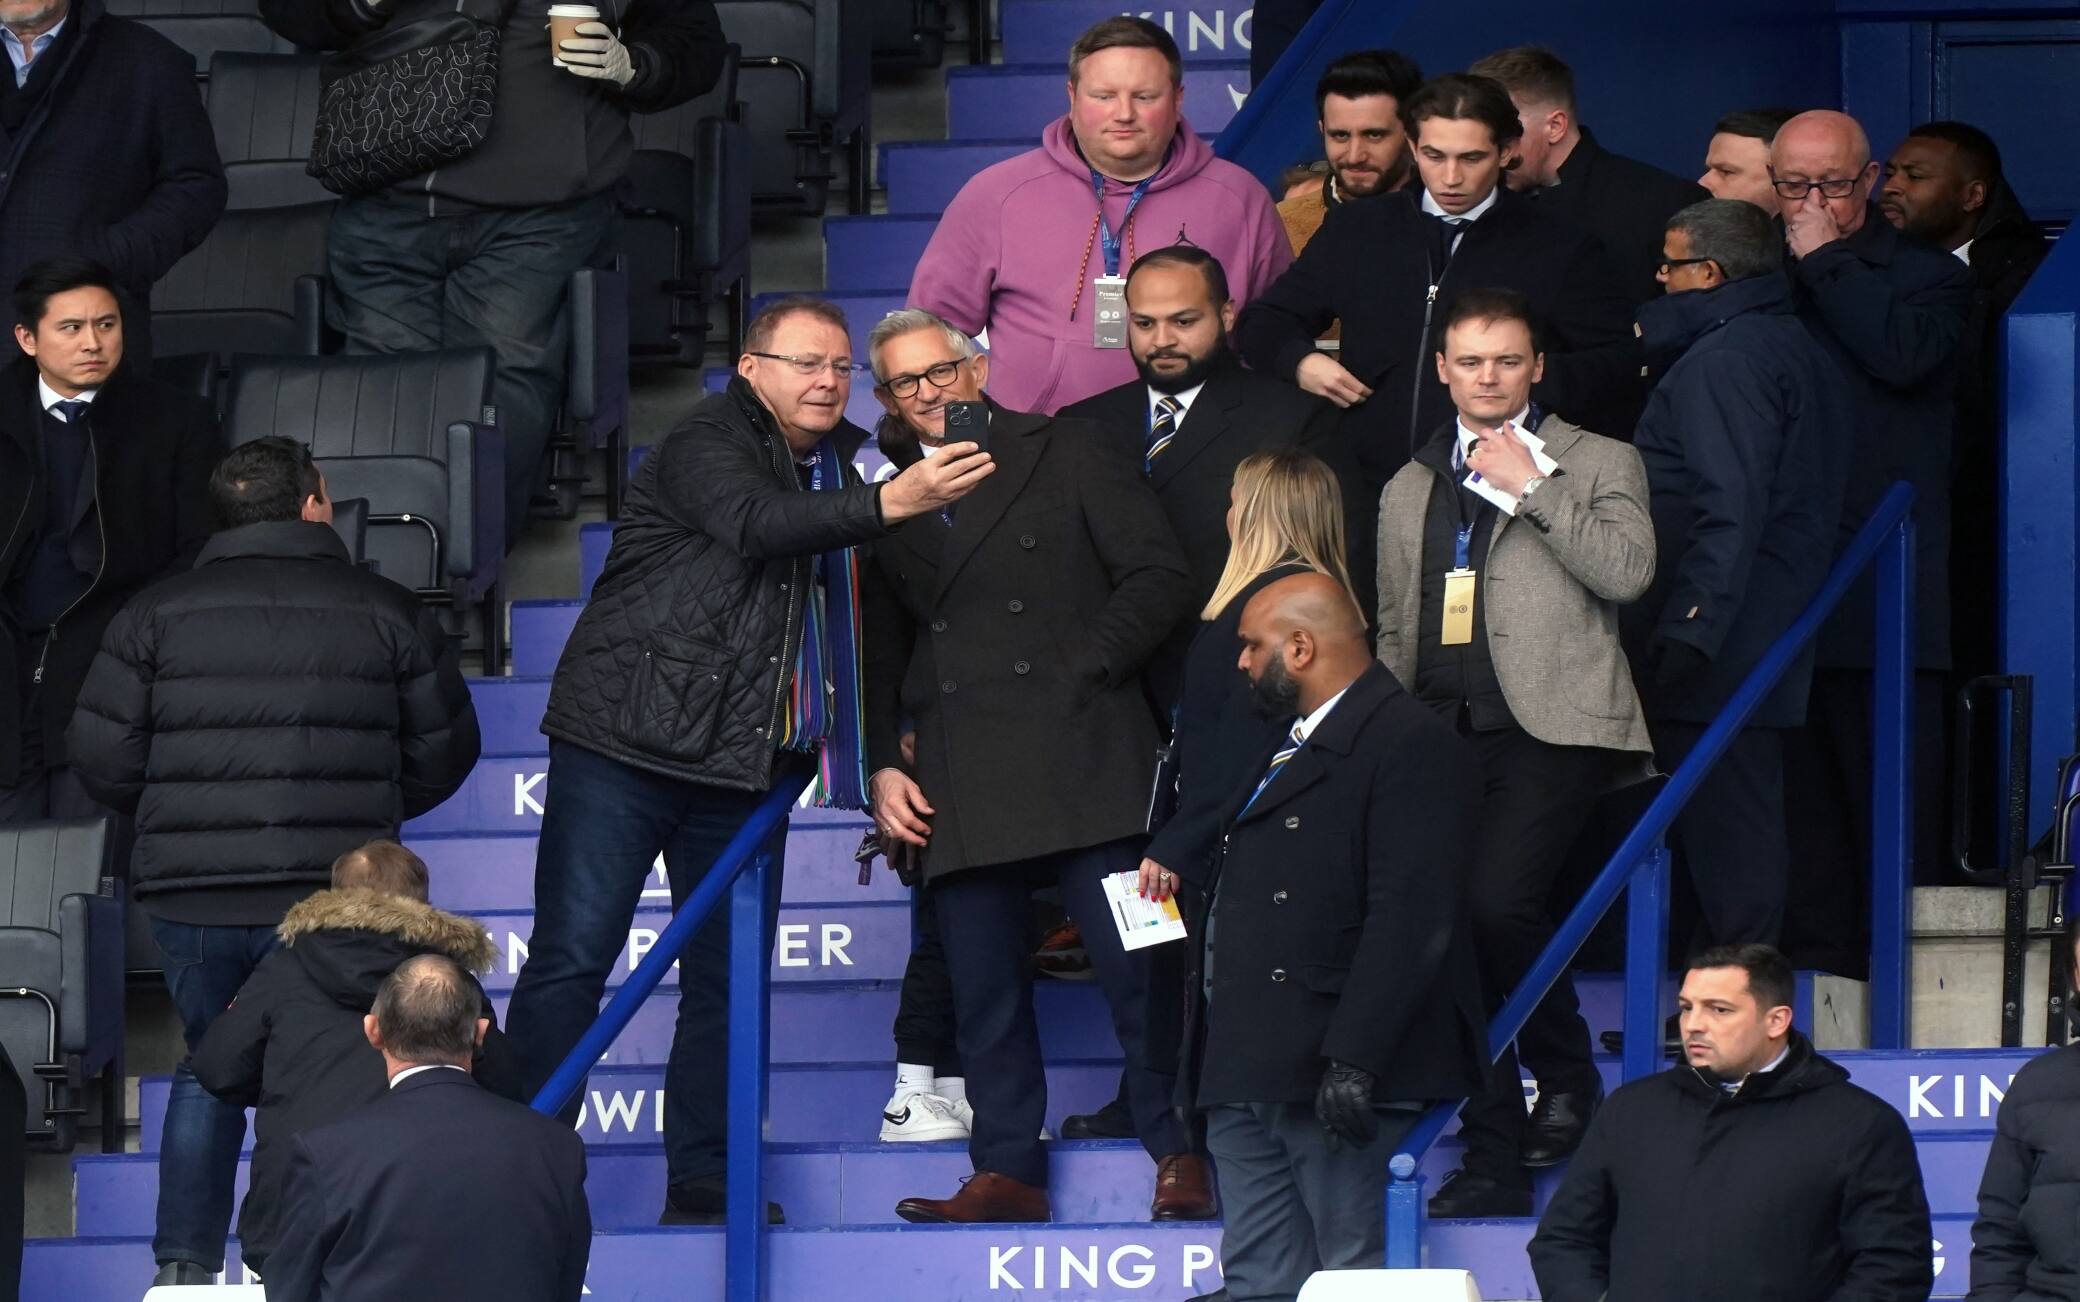 Un tifoso del Leicester chiede un selfie a Lineker al suo arrivo al King Power Stadium, prima del match delle Foxes contro il Chelsea